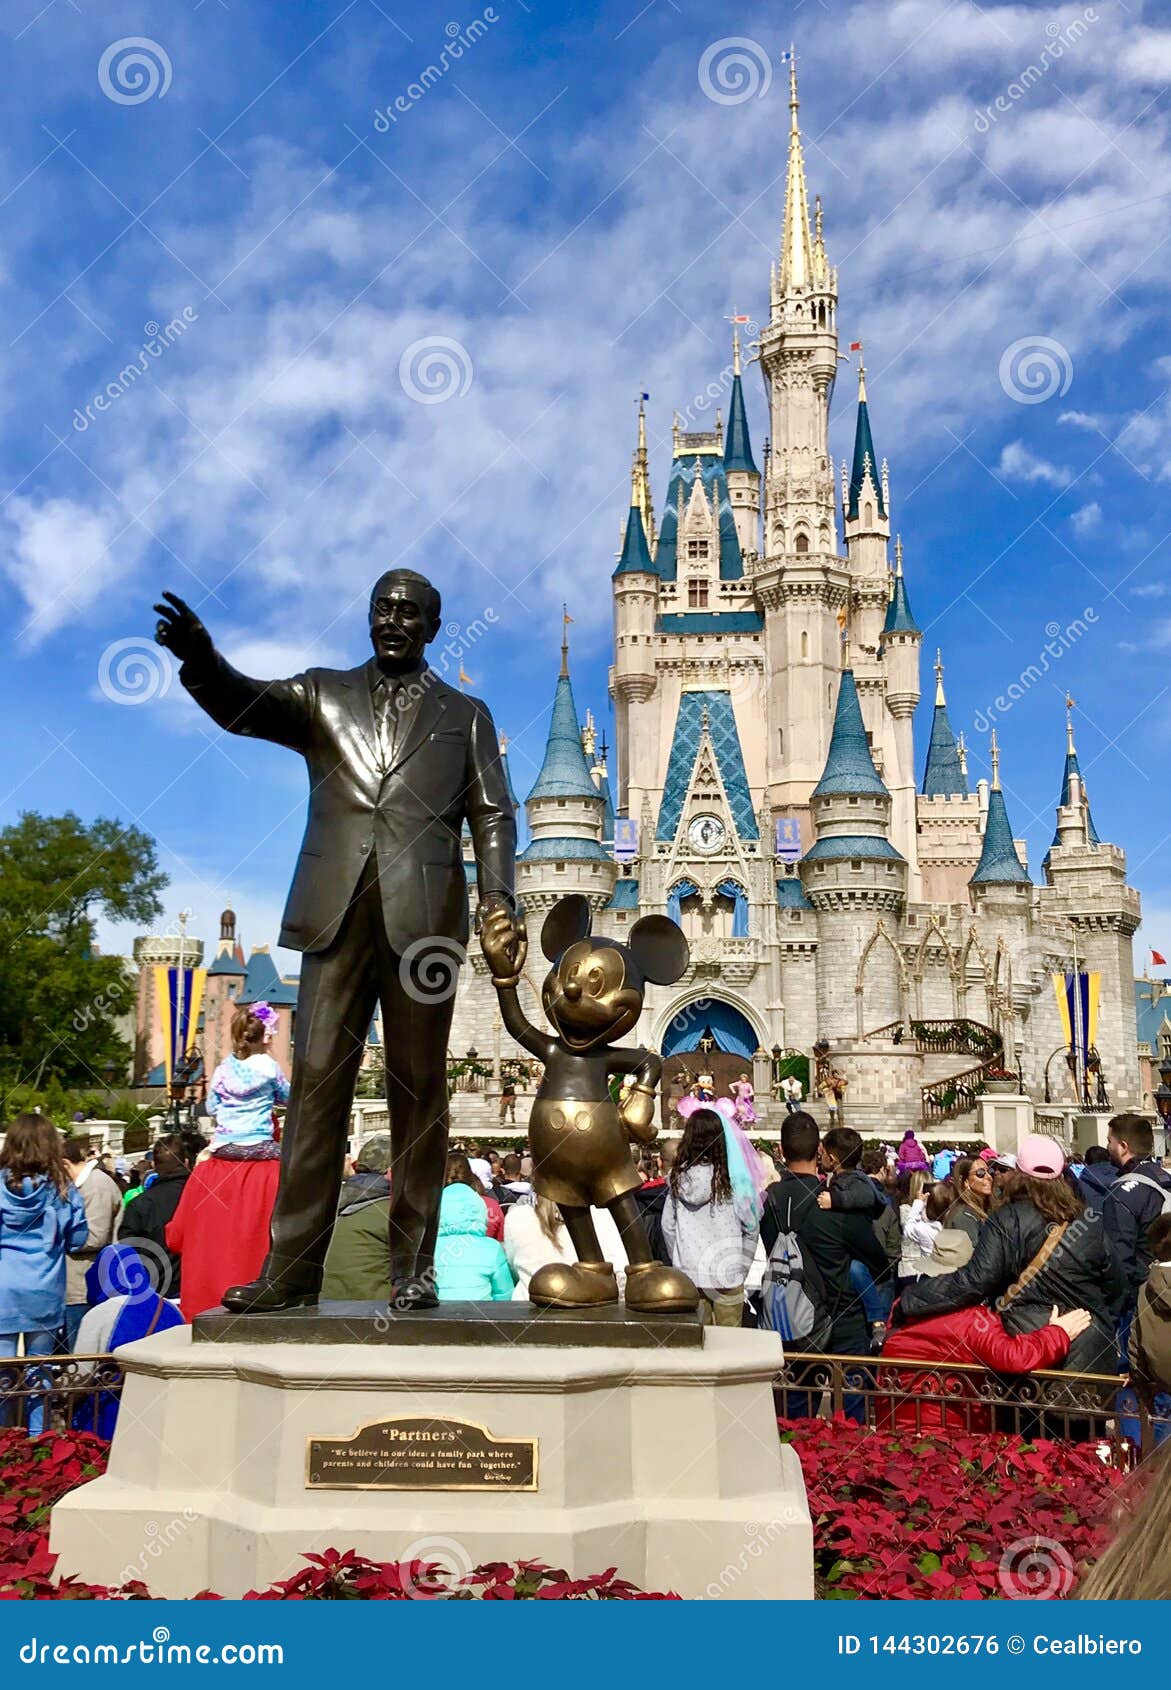 Where Dreams Come True Editorial Photo Image Of Disney